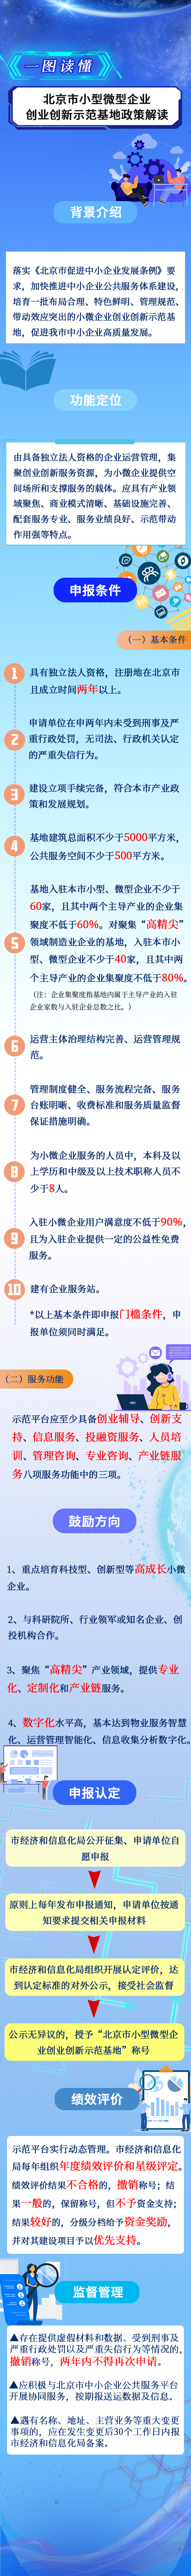 一图读懂《北京市小型微型企业创业创新示范基地管理办法》.jpg